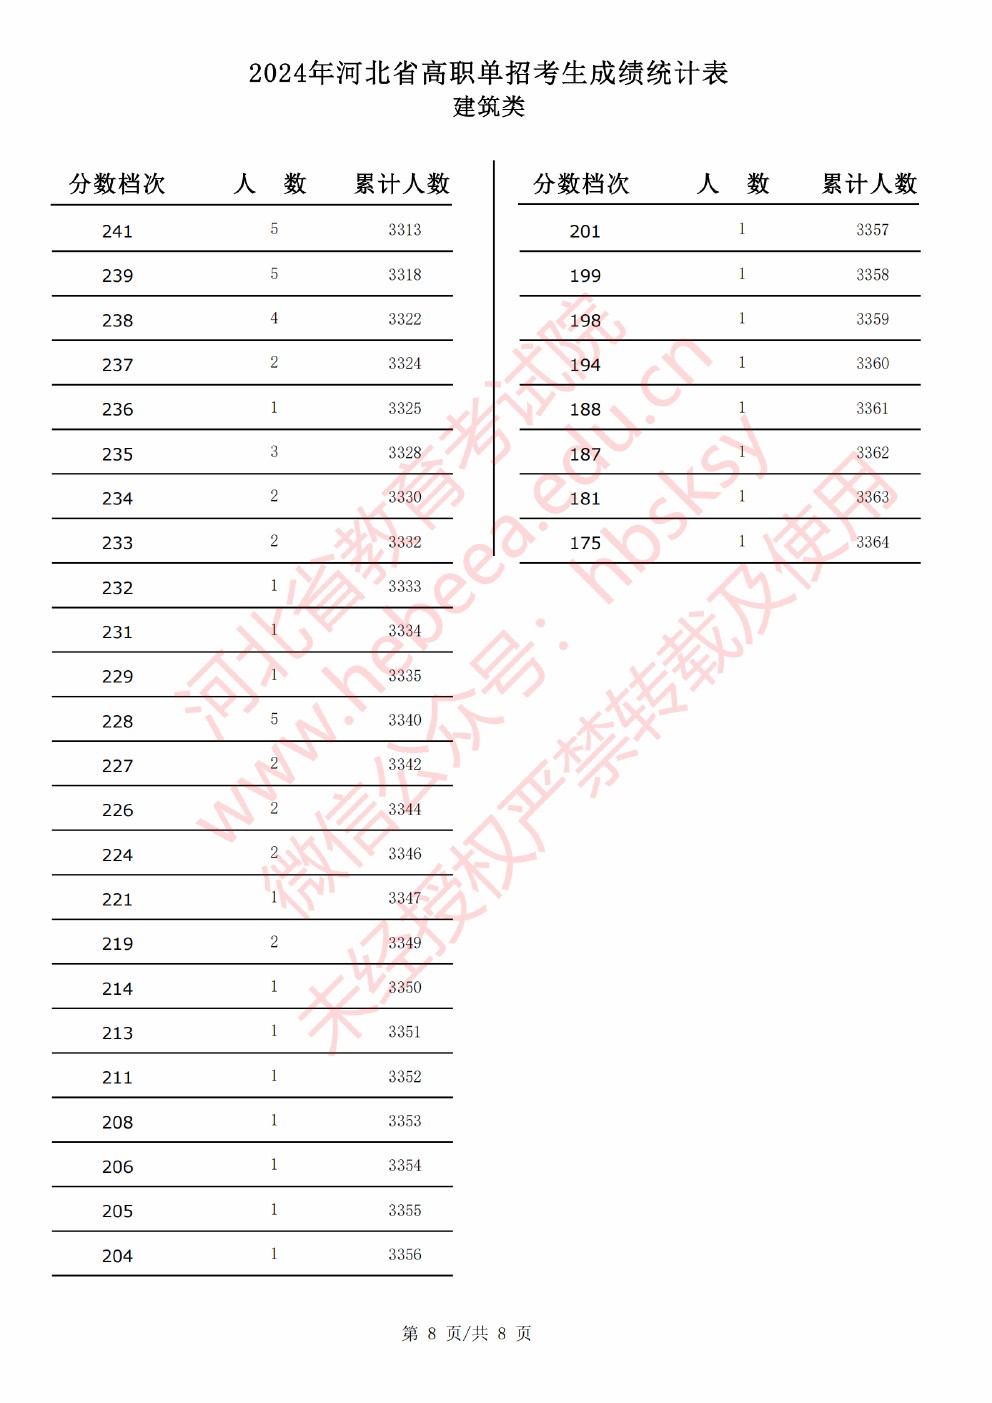 2024年河北省高职单招考试建筑类成绩统计表 